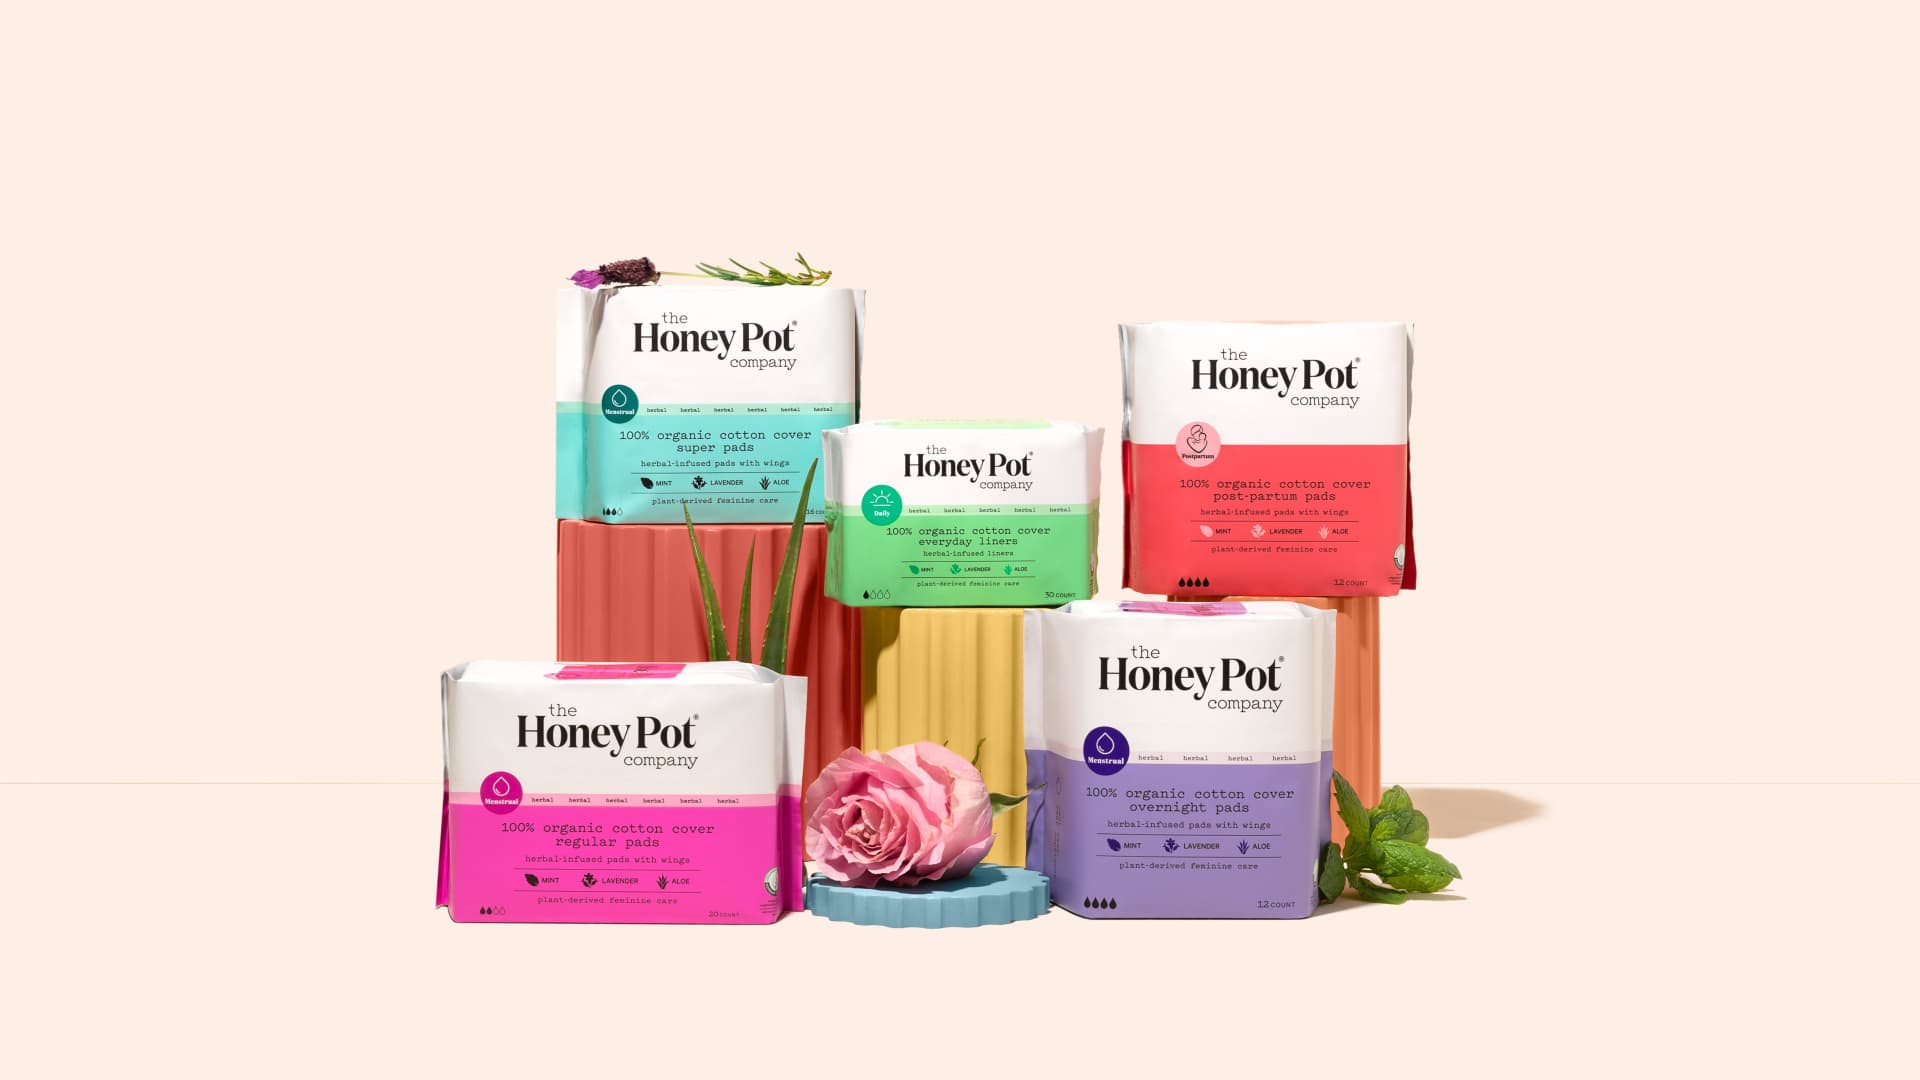 Honey Pot Company products